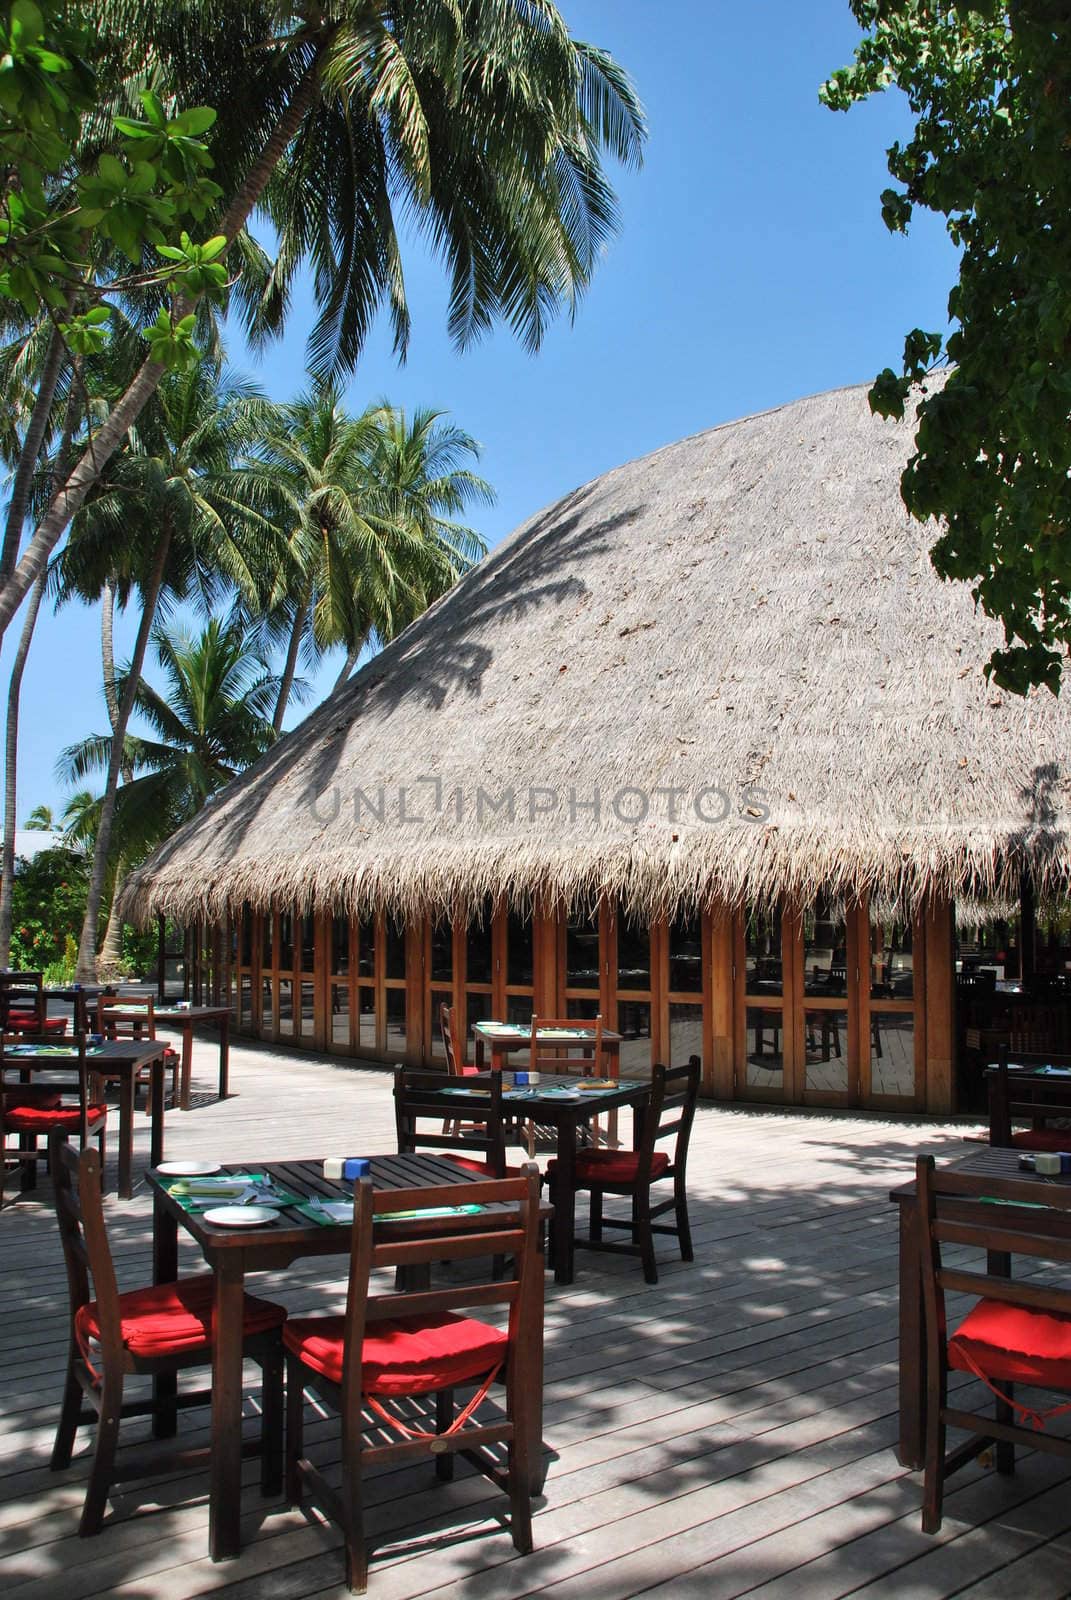 Beach restaurant view in Maldives by luissantos84